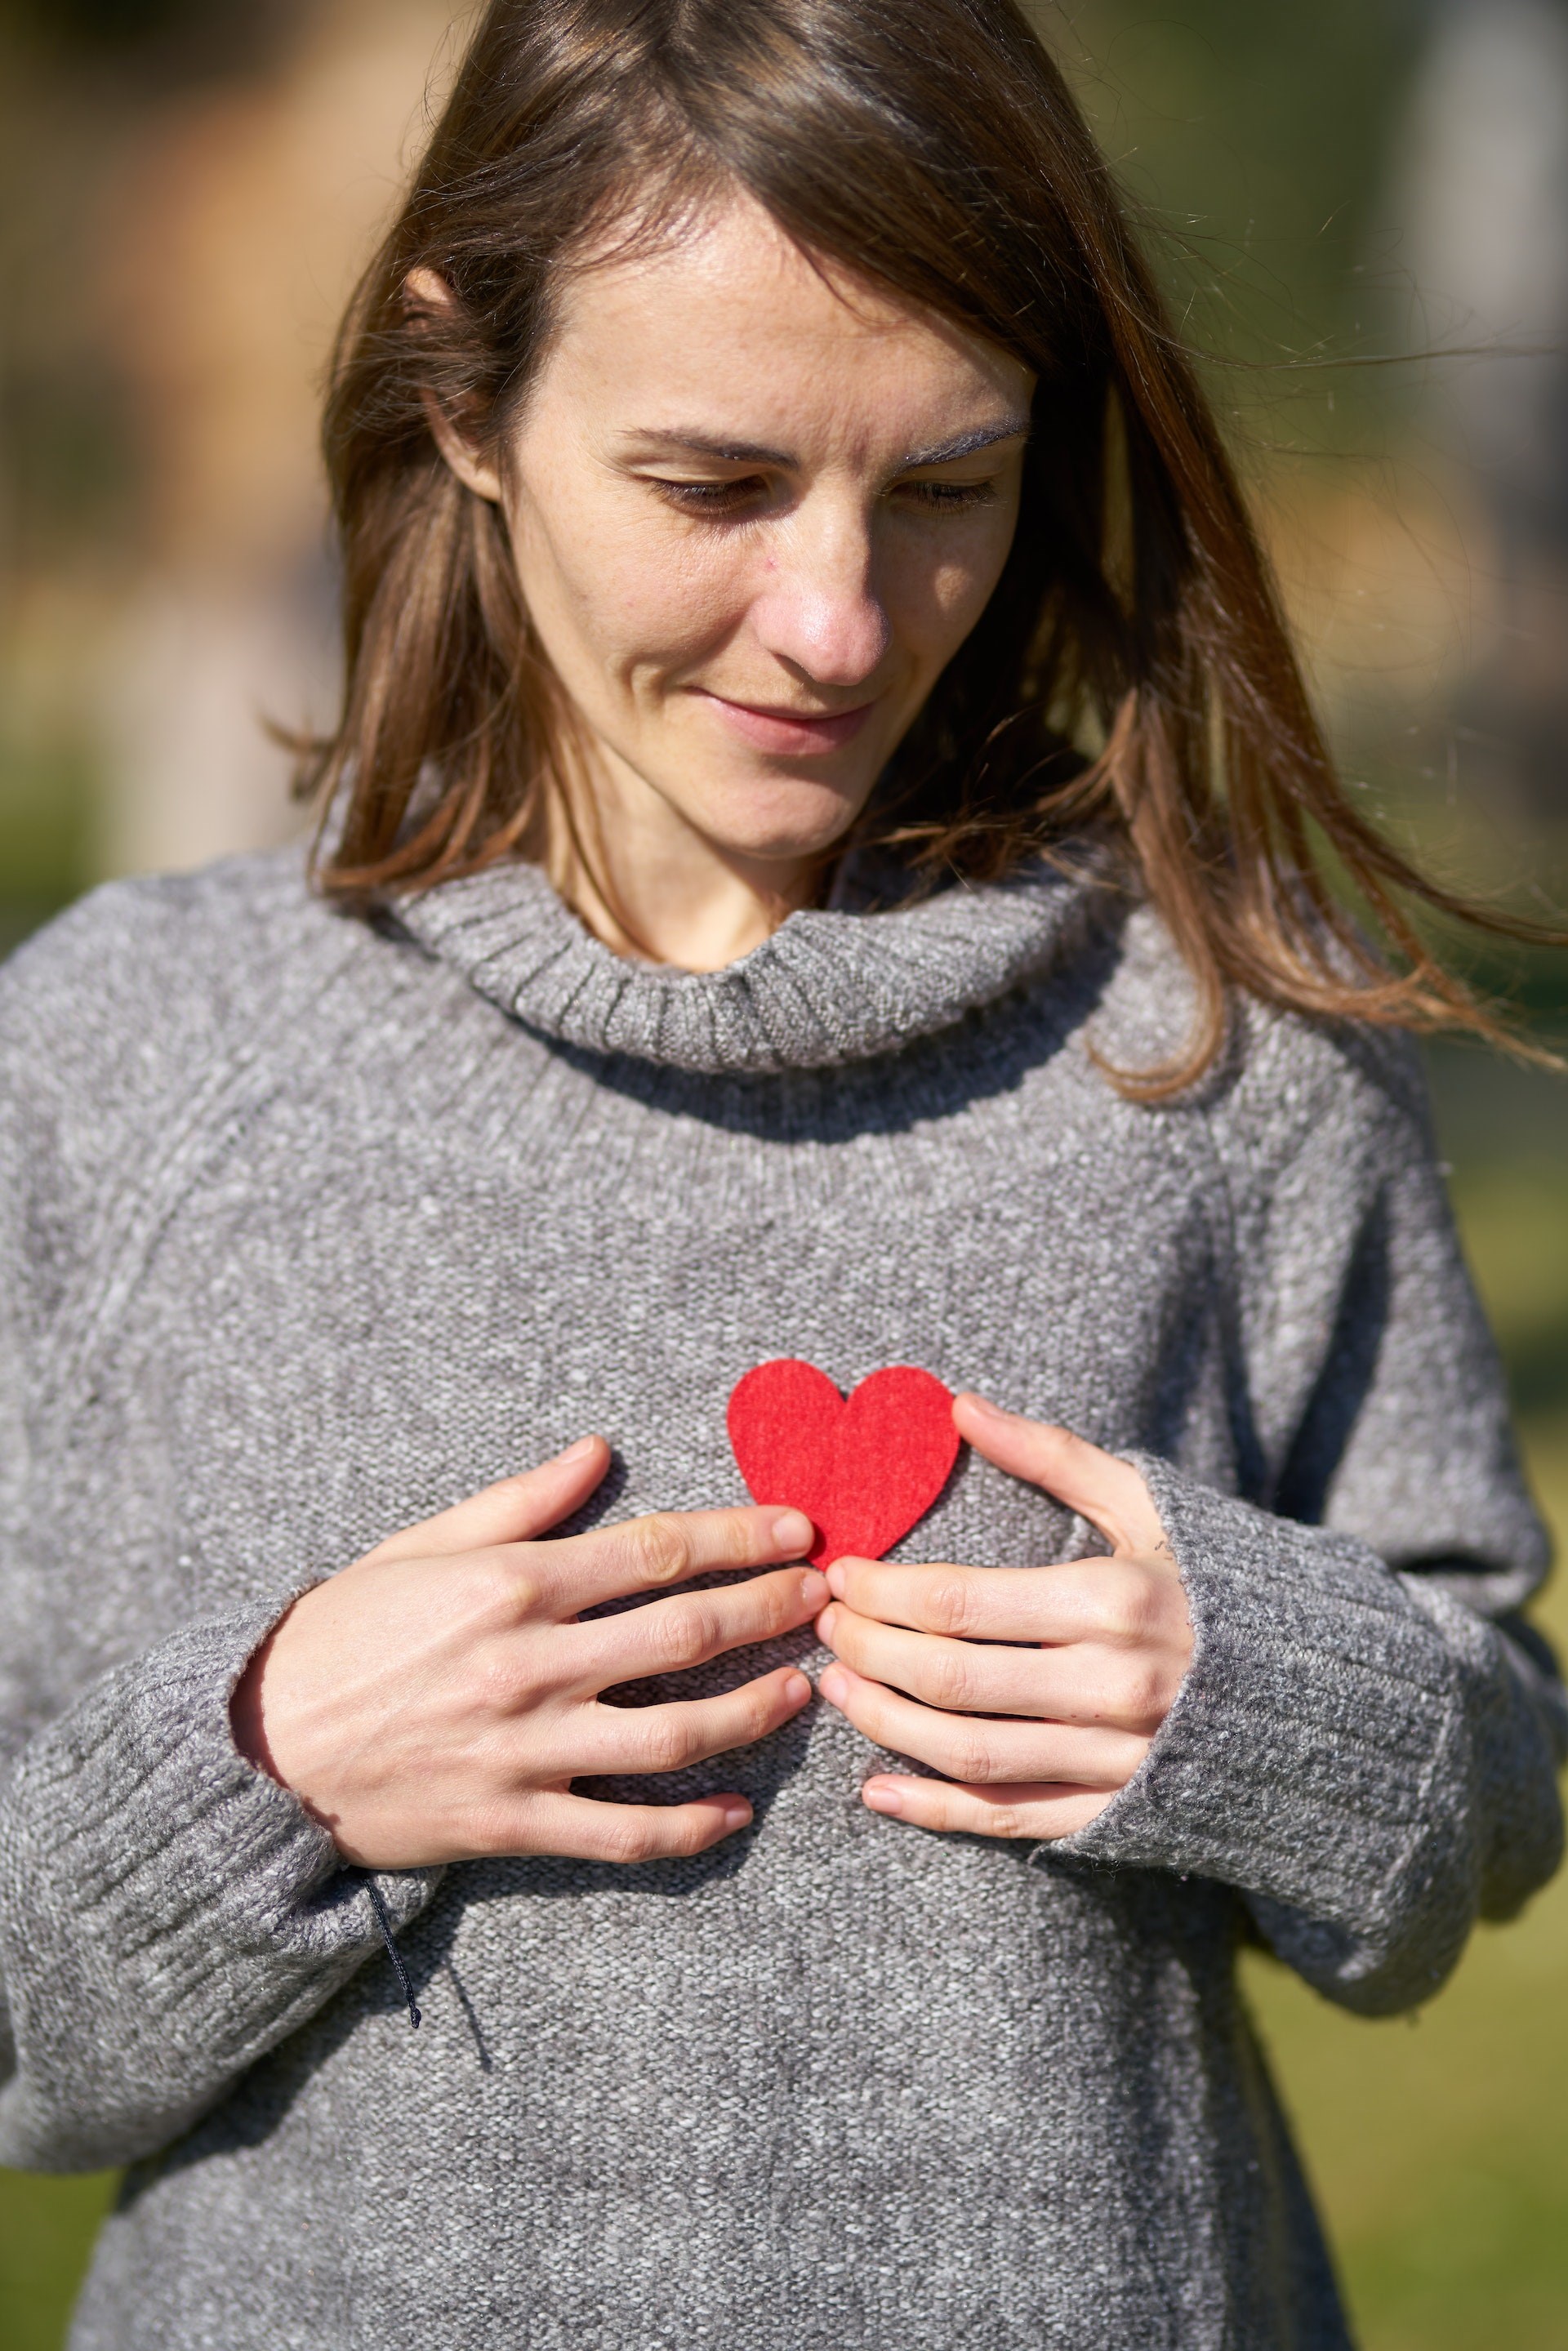 Rødt hjerte på brystet af kvinde. Foto: Pexels.com